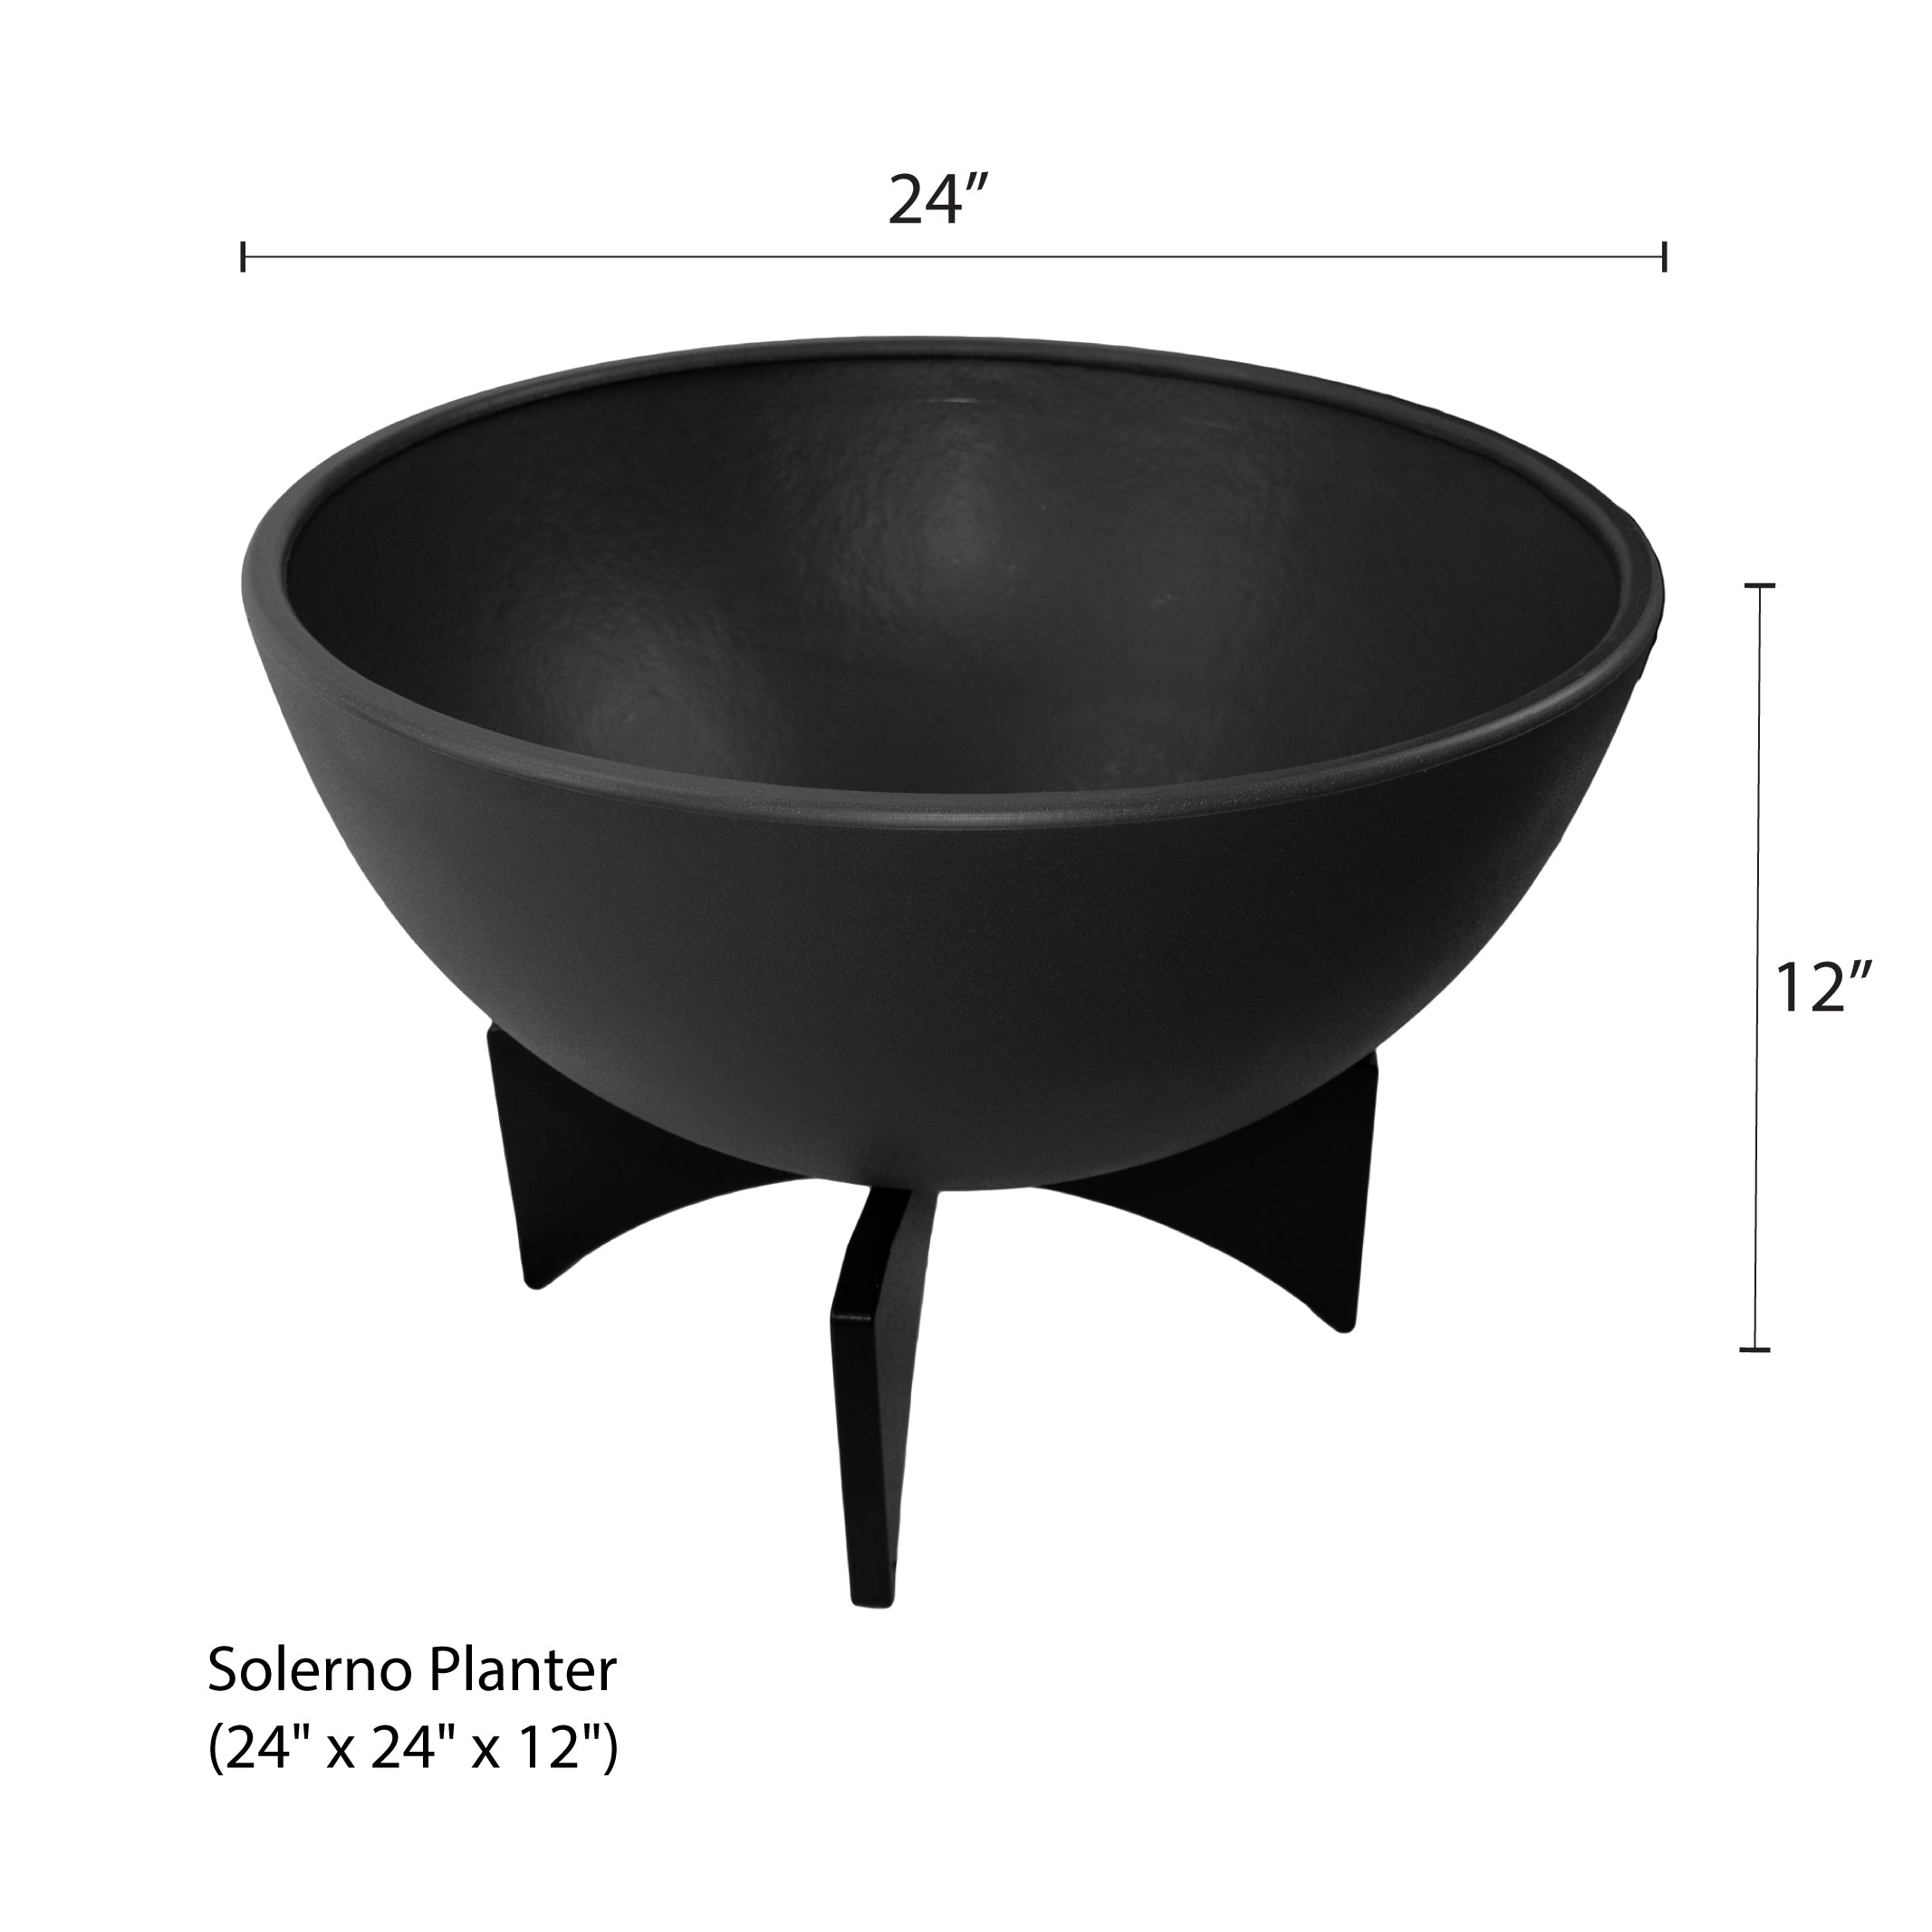 Graphite half dome solerno planter with measurements (small)